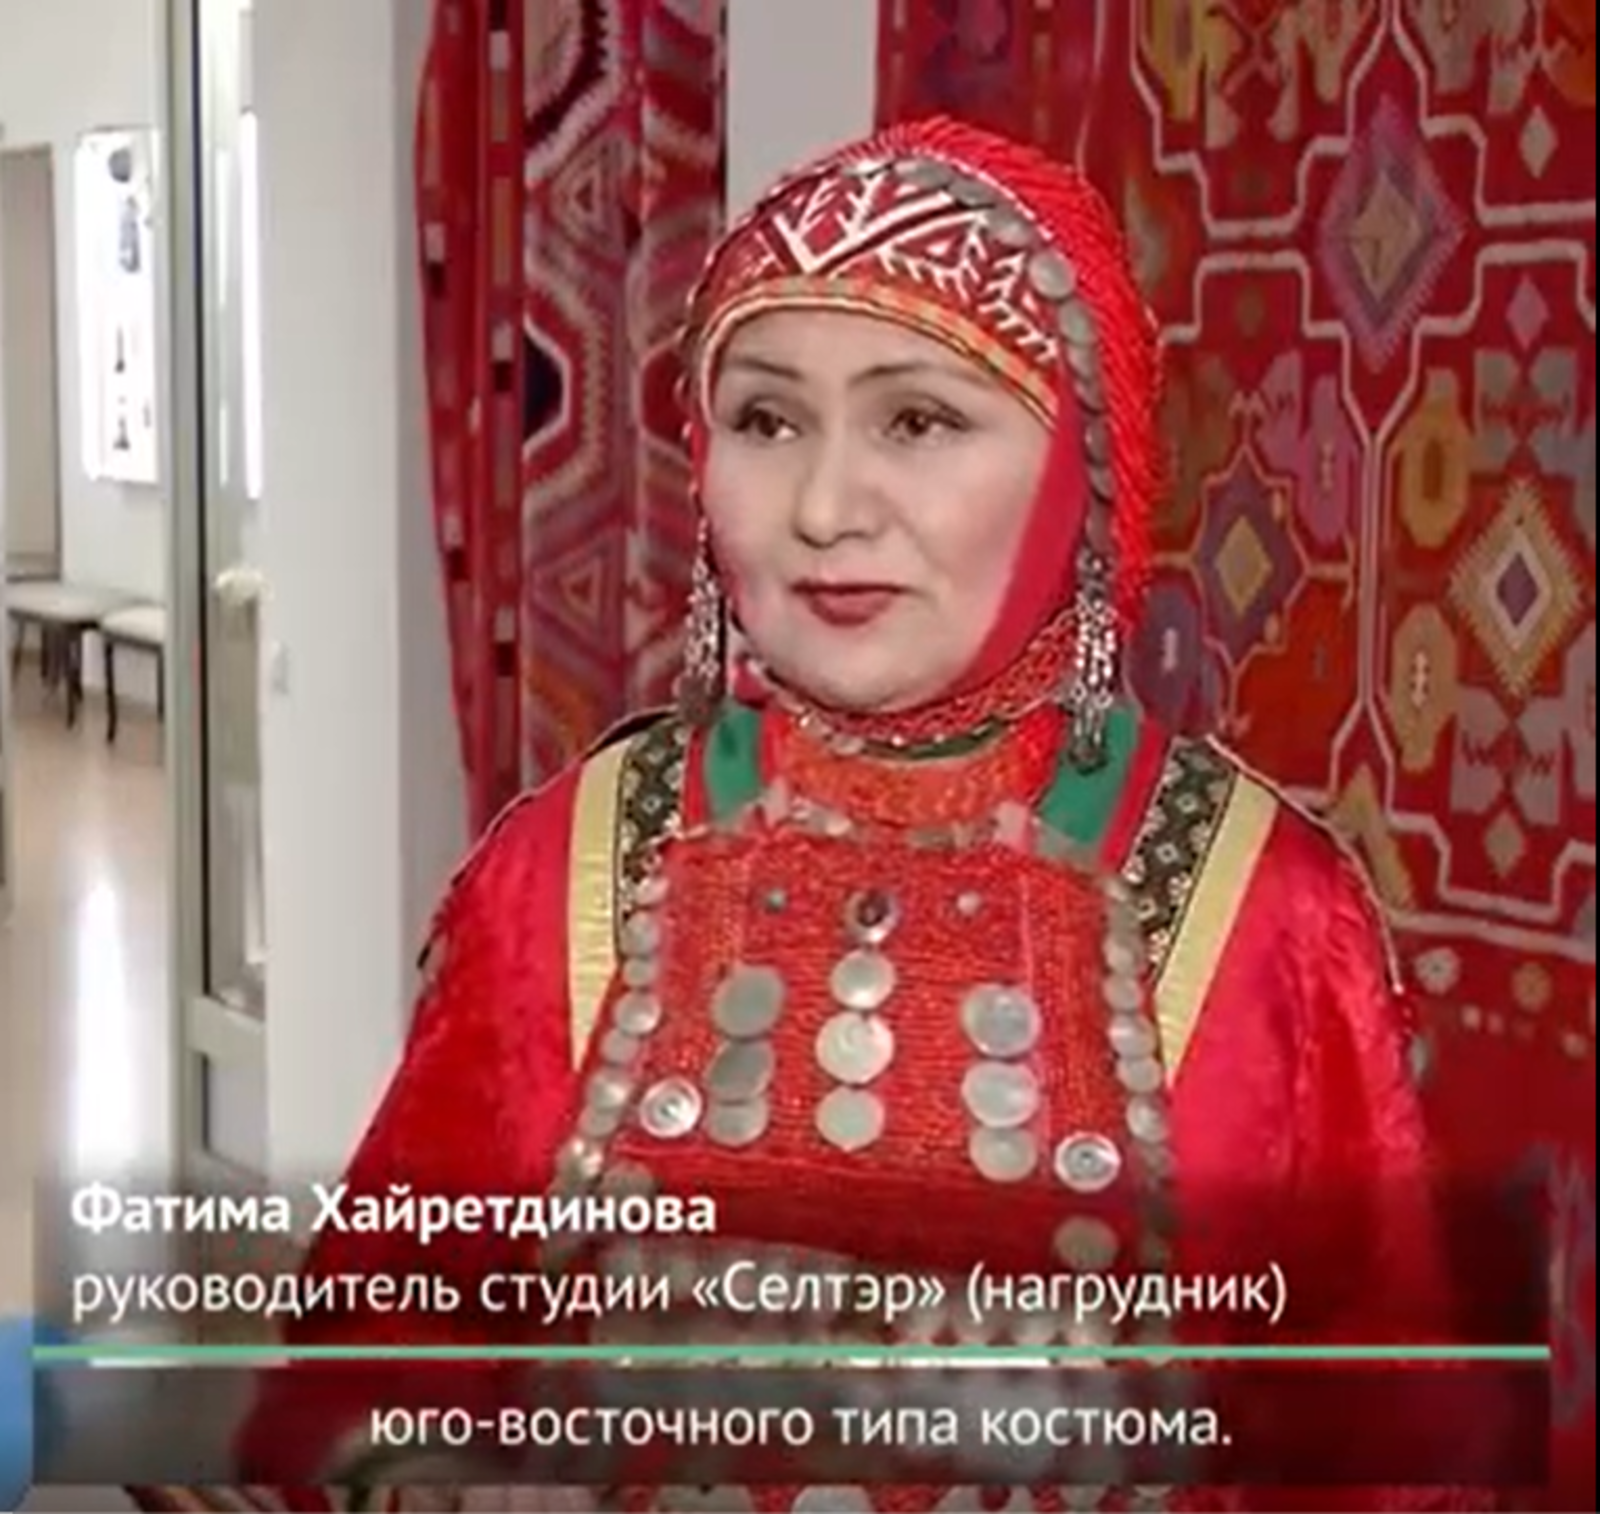 Мнение мастеров и экспертов Башкортостана по народному костюму